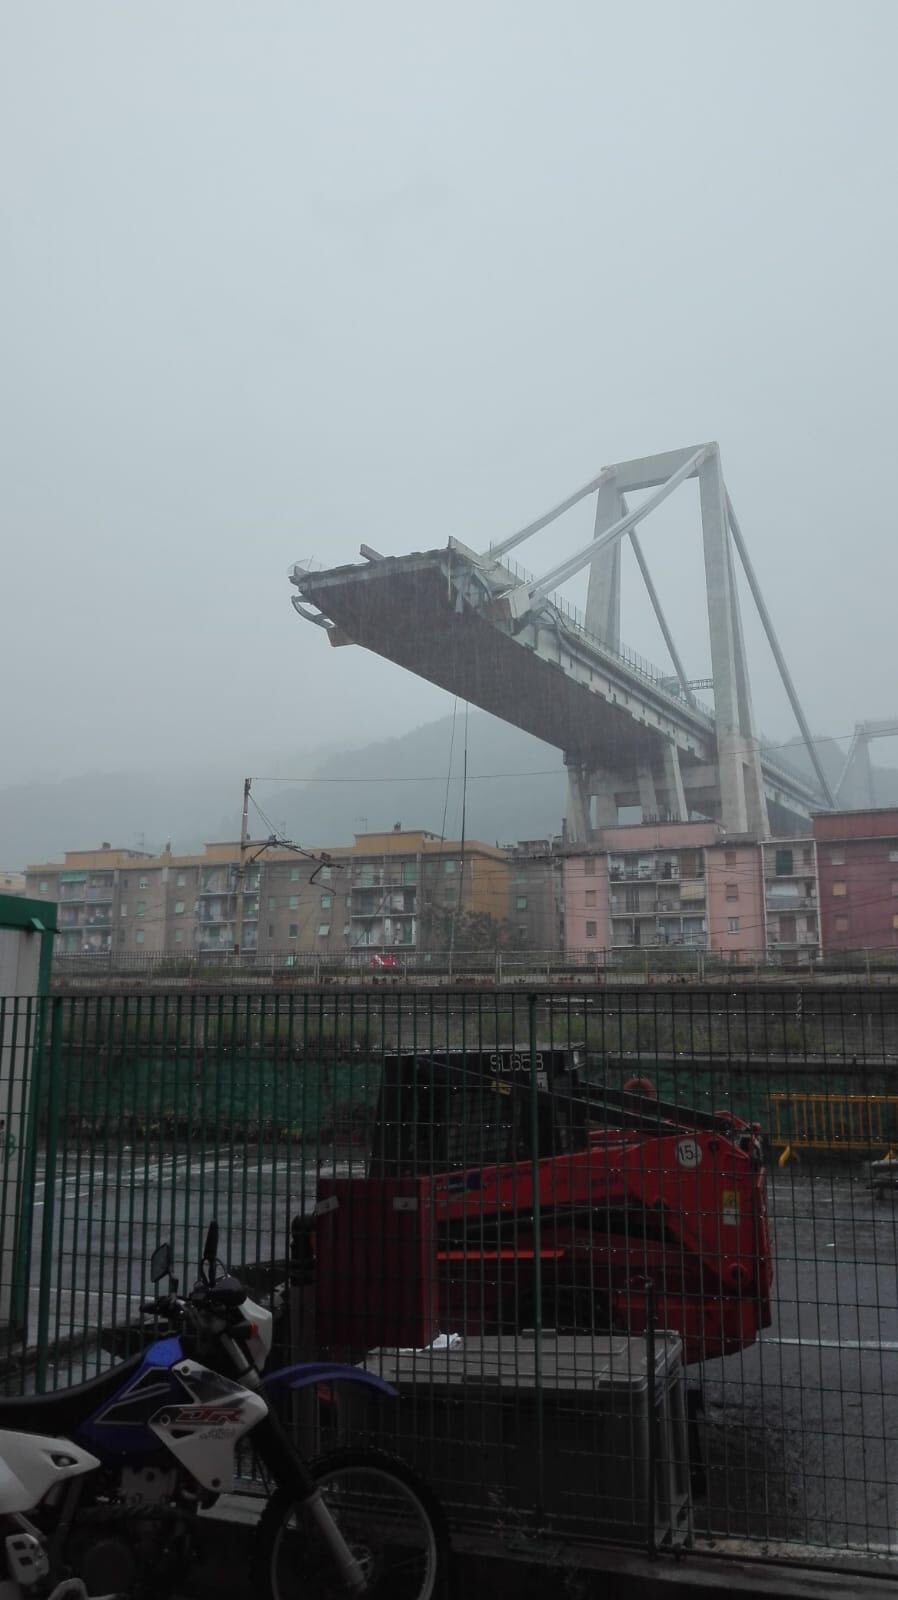 Vijadukt je rekonstruiran 2016. godine, a iz talijanskih autocesta su izjavili da su za vrijeme urušavanja izvodili neke radove na temeljima vijadukta. Također tvrde da je most bio pod konstantnim nadzorom.